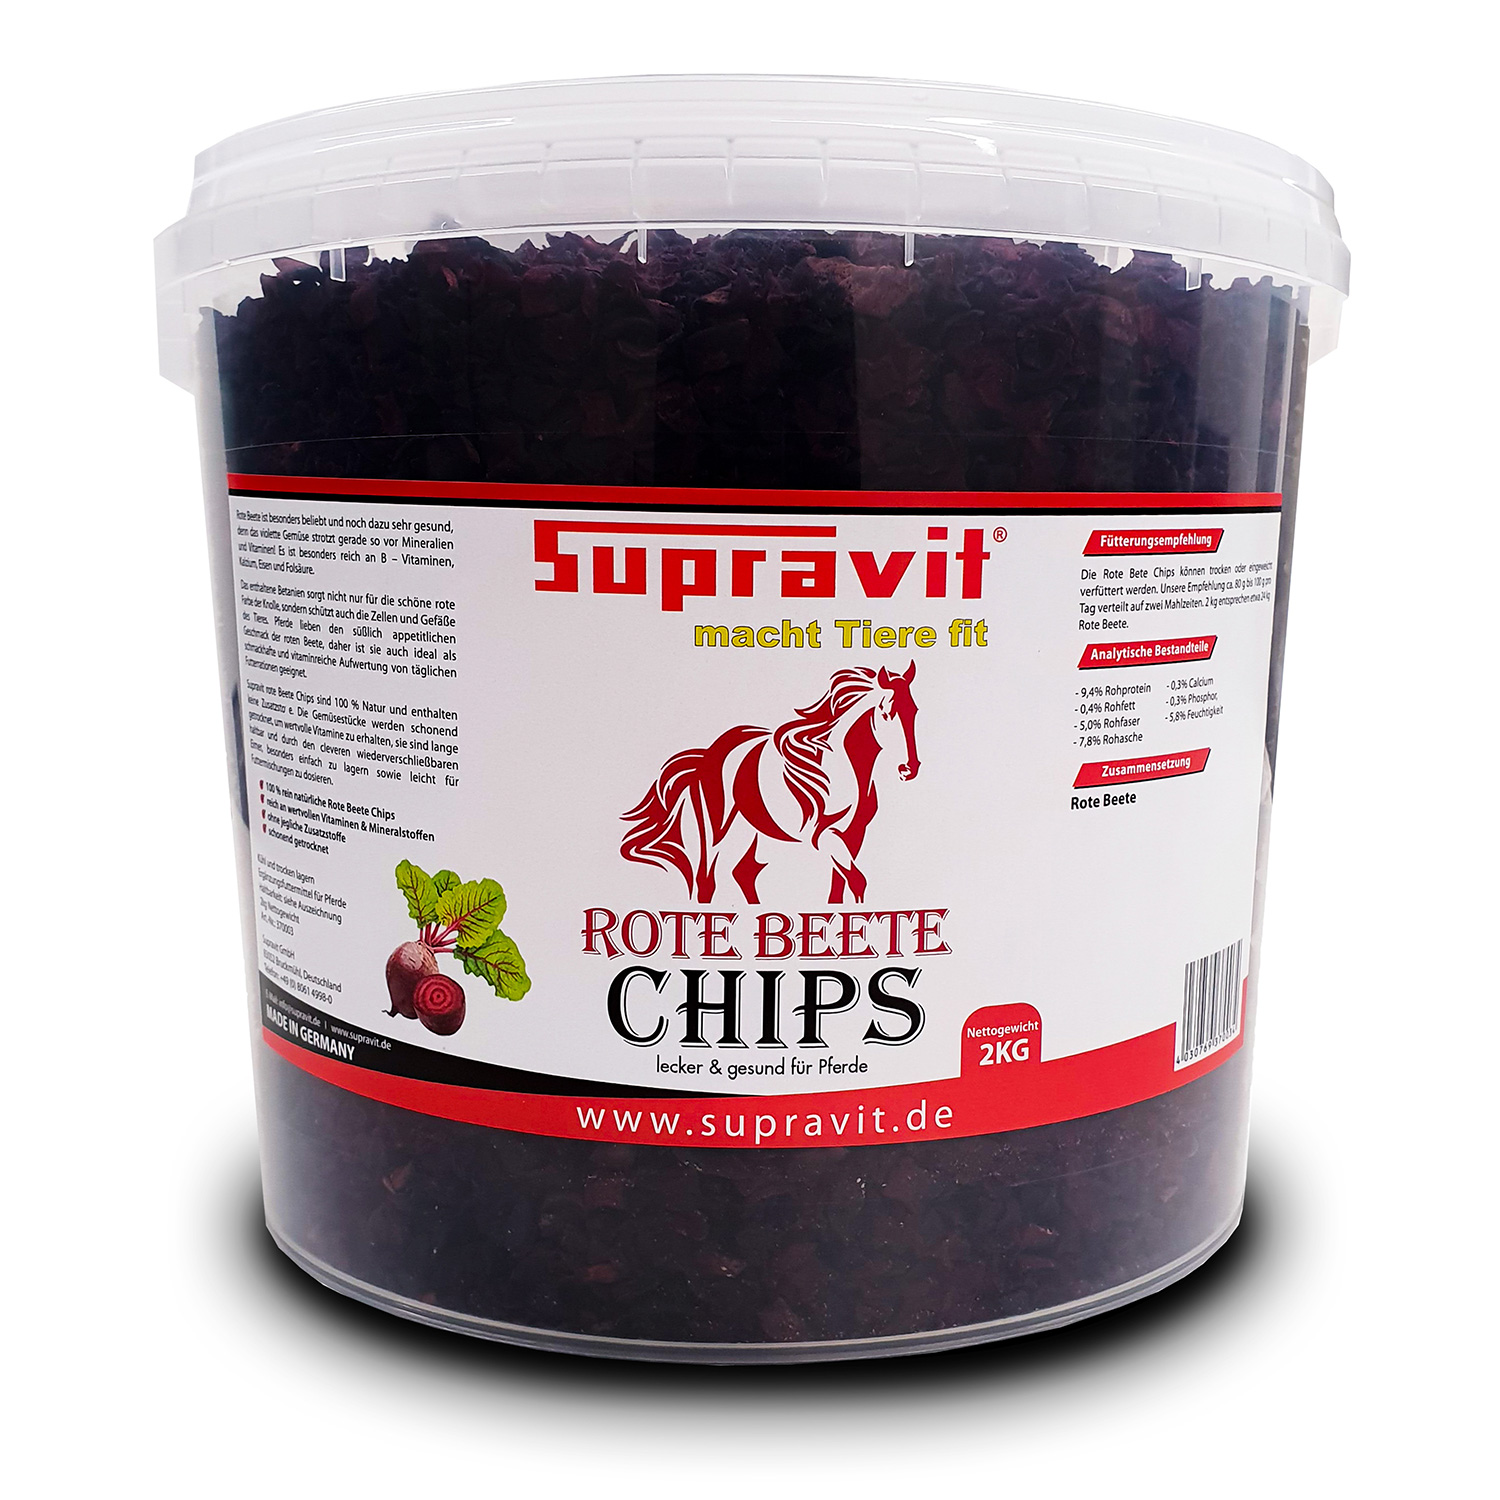 Supravit Rote Beete Chips 2kg für alle Pferde – 100% Natur ohne jeglichen Zusatzstoffe – Leckerli & Zusatzfutter